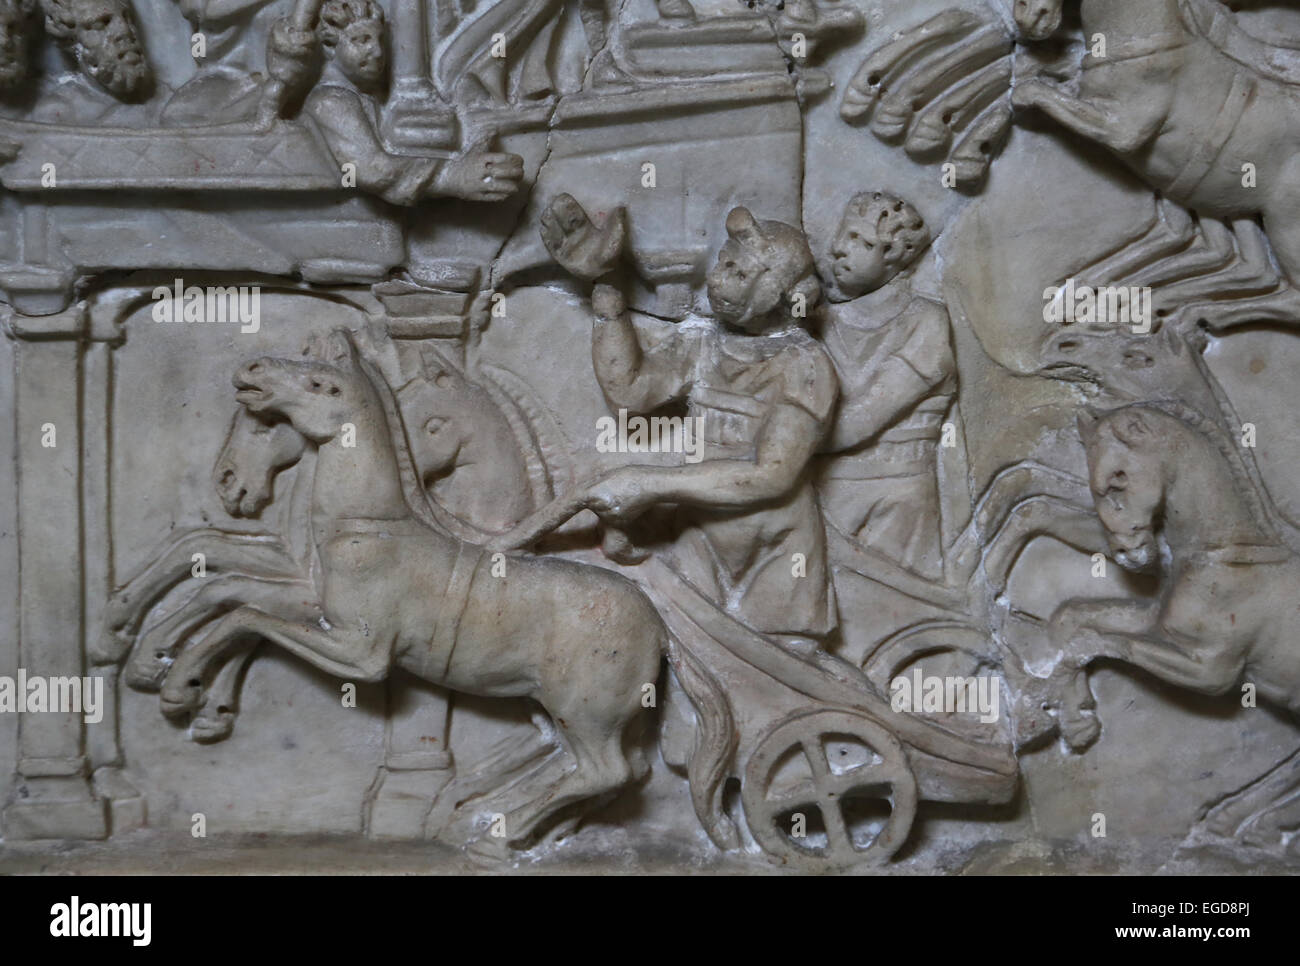 Gara delle bighe nel Circo Massimo, ROMA, 3° C. Uno dei nobili nel contenitore si estende una mano verso il victor charioteer. Foto Stock